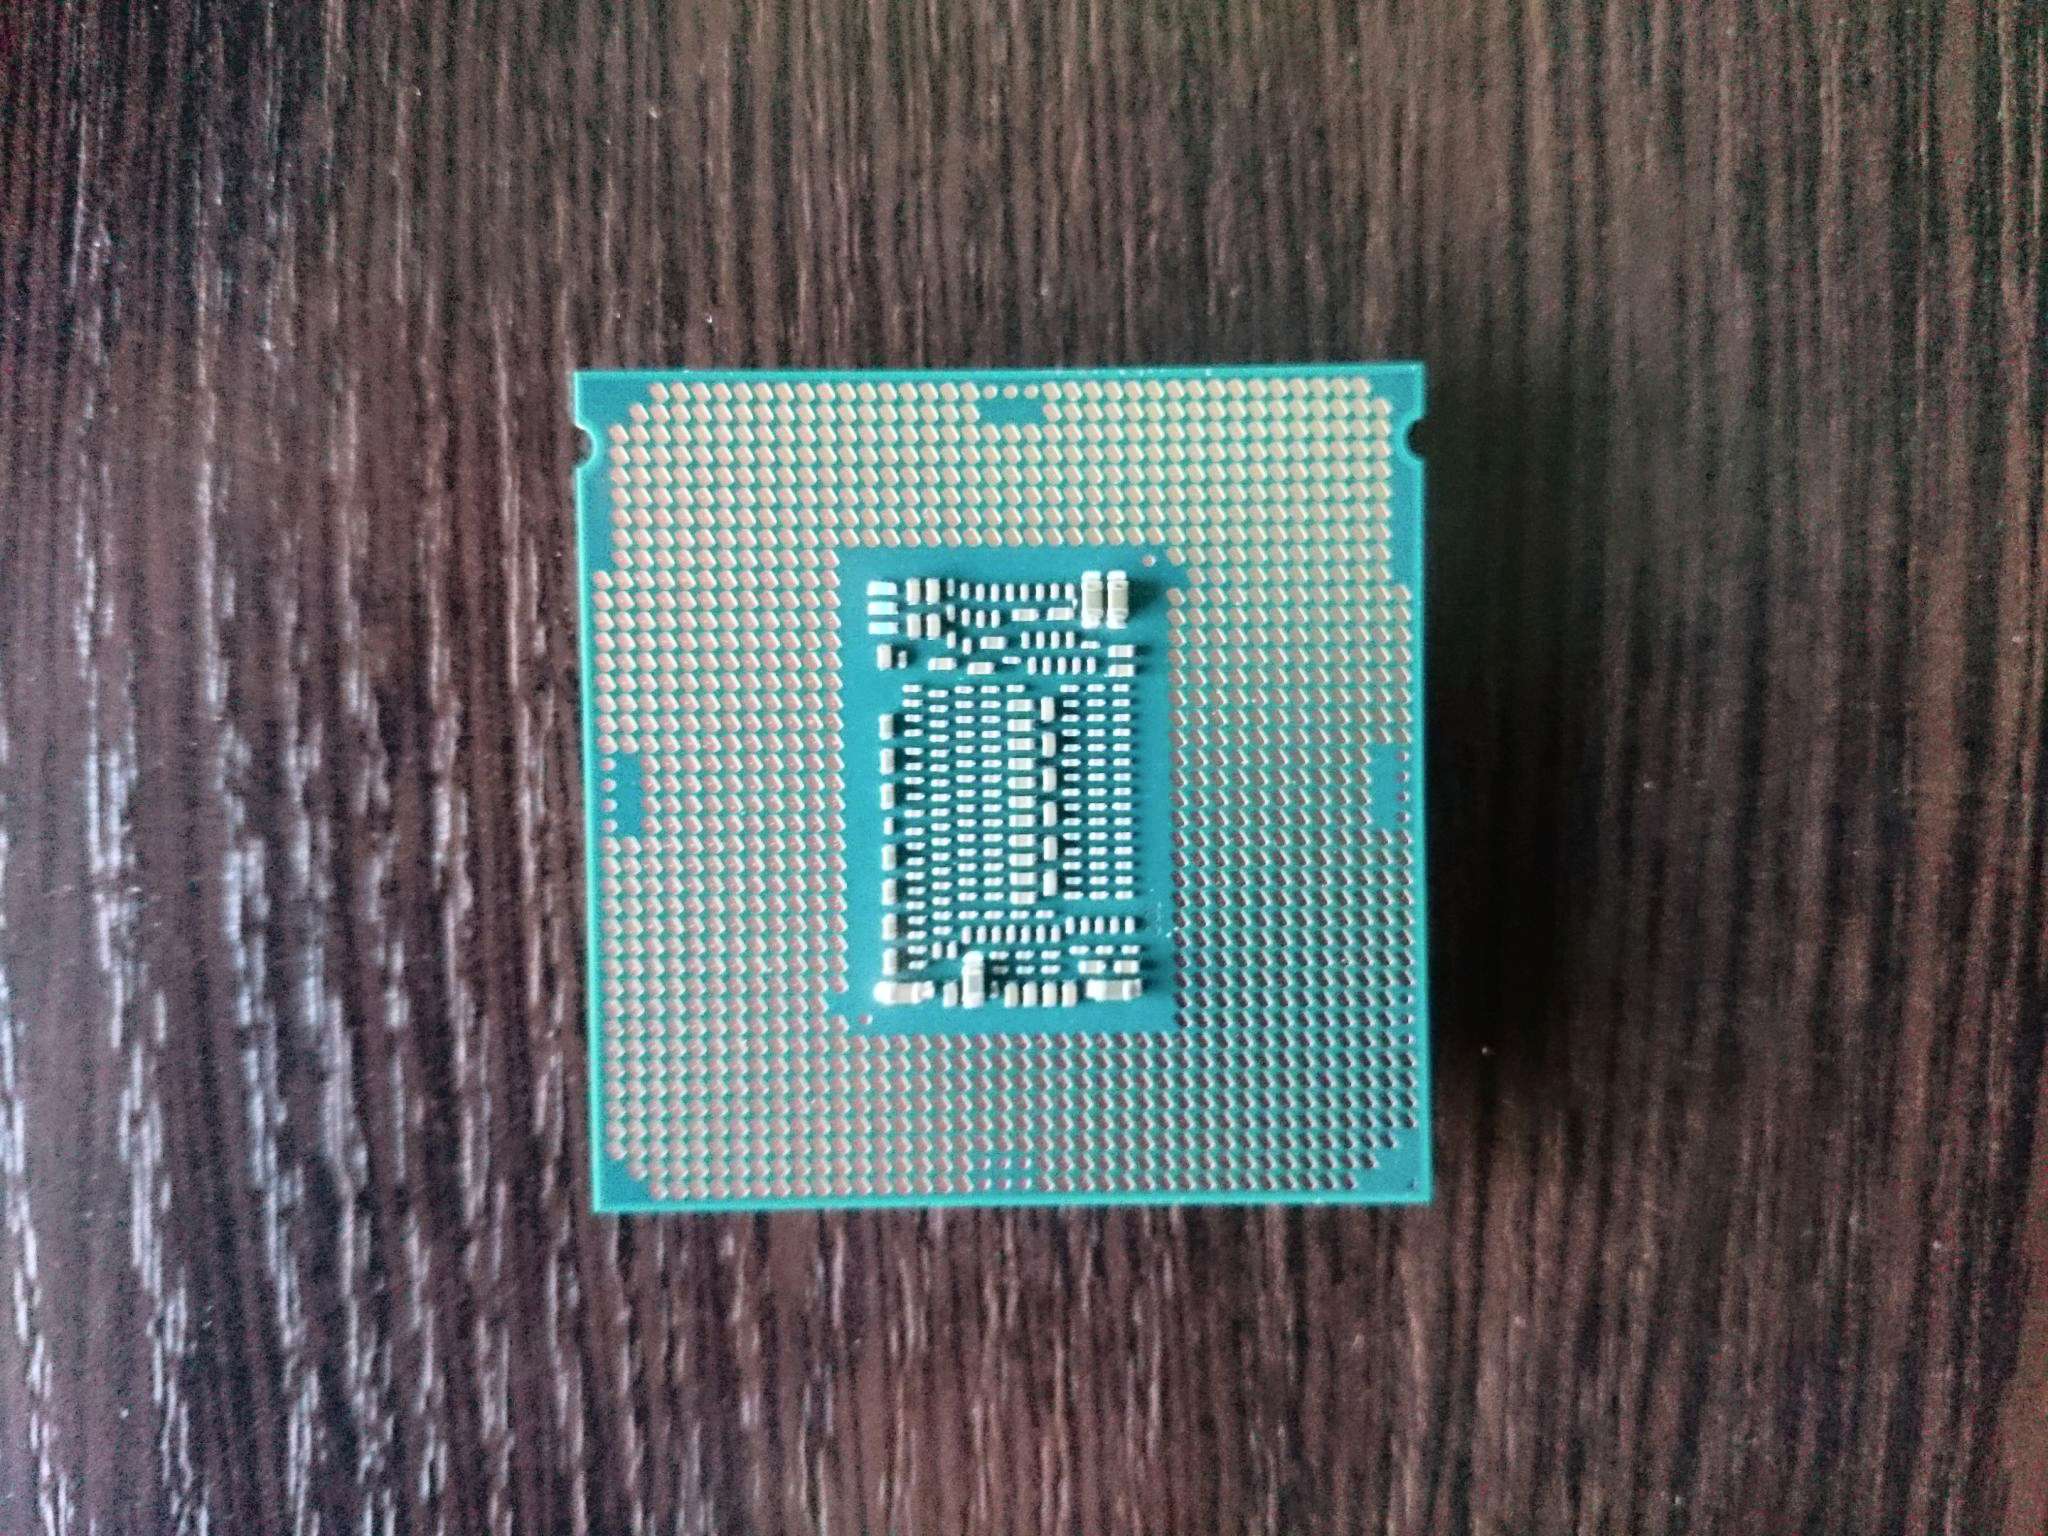 Интел 5 9400f